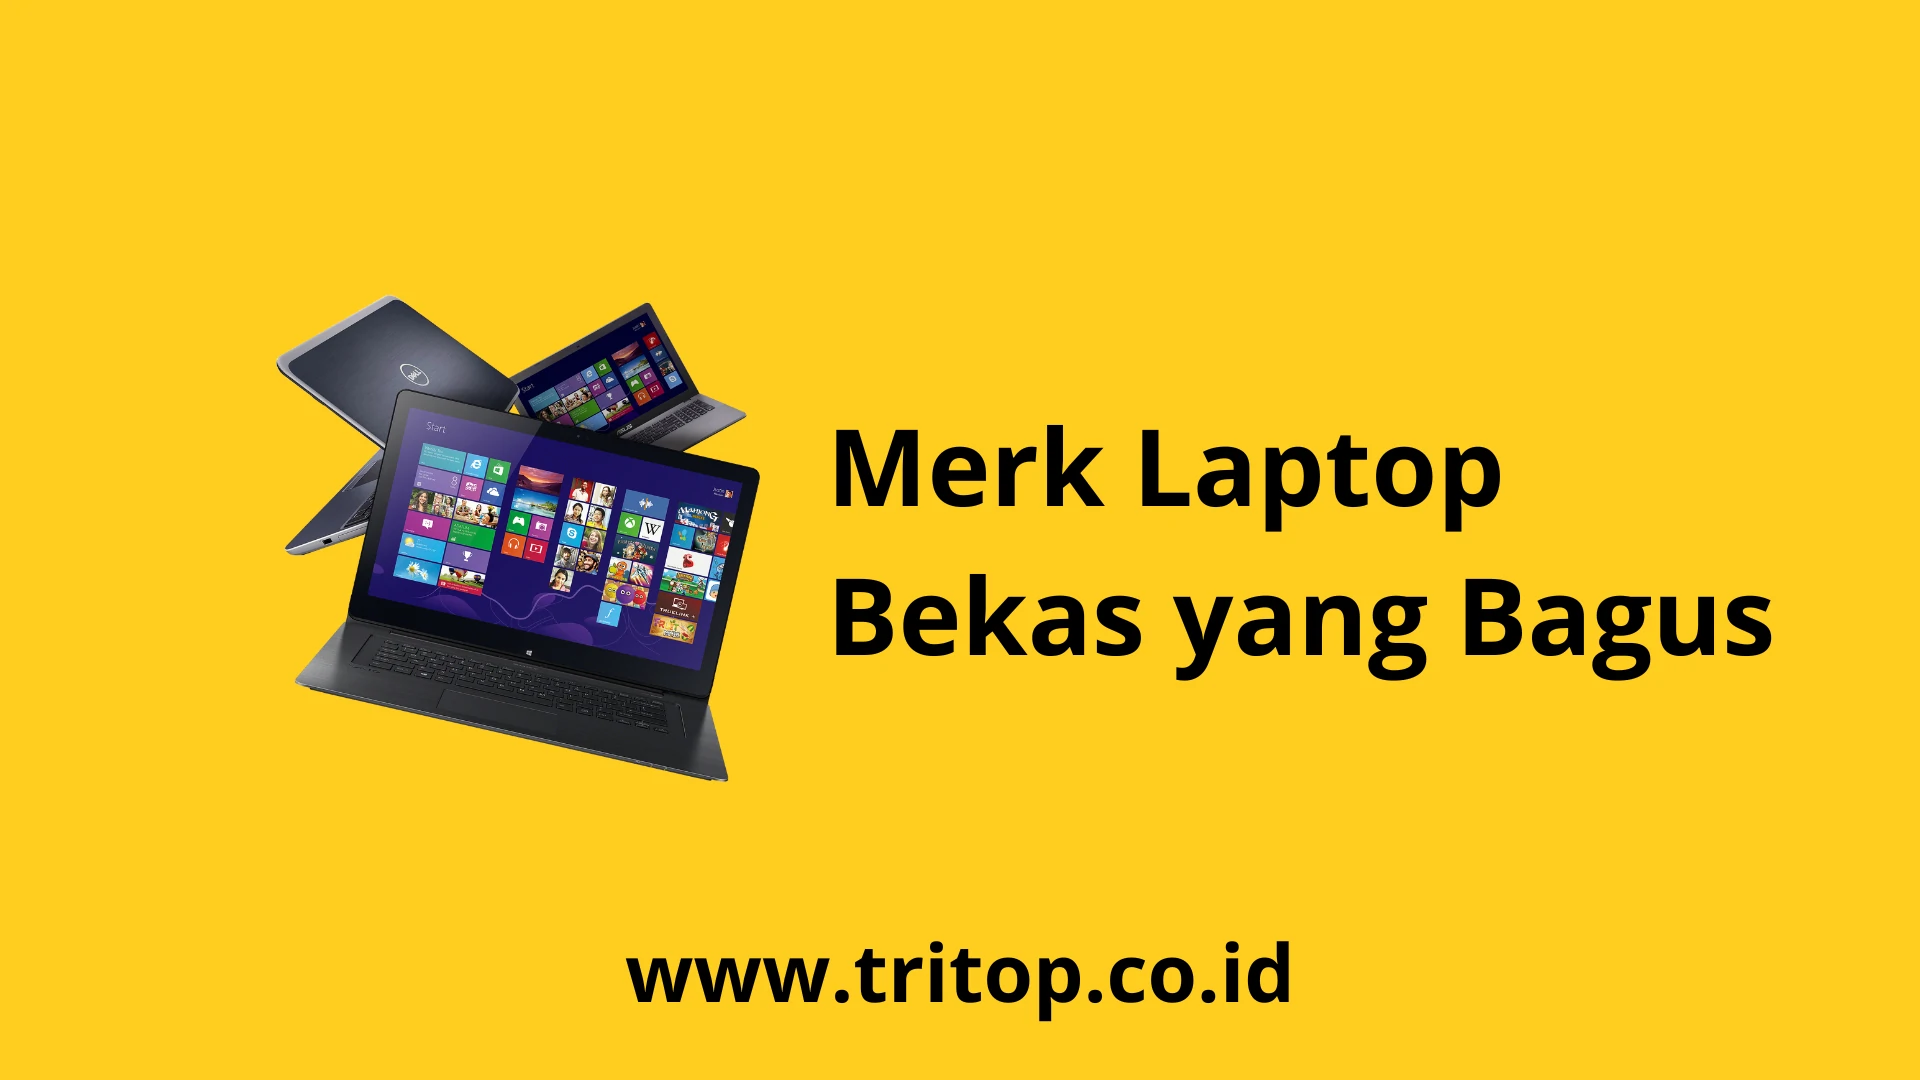 Merk Laptop Bekas yang Bagus Tritop.co.id